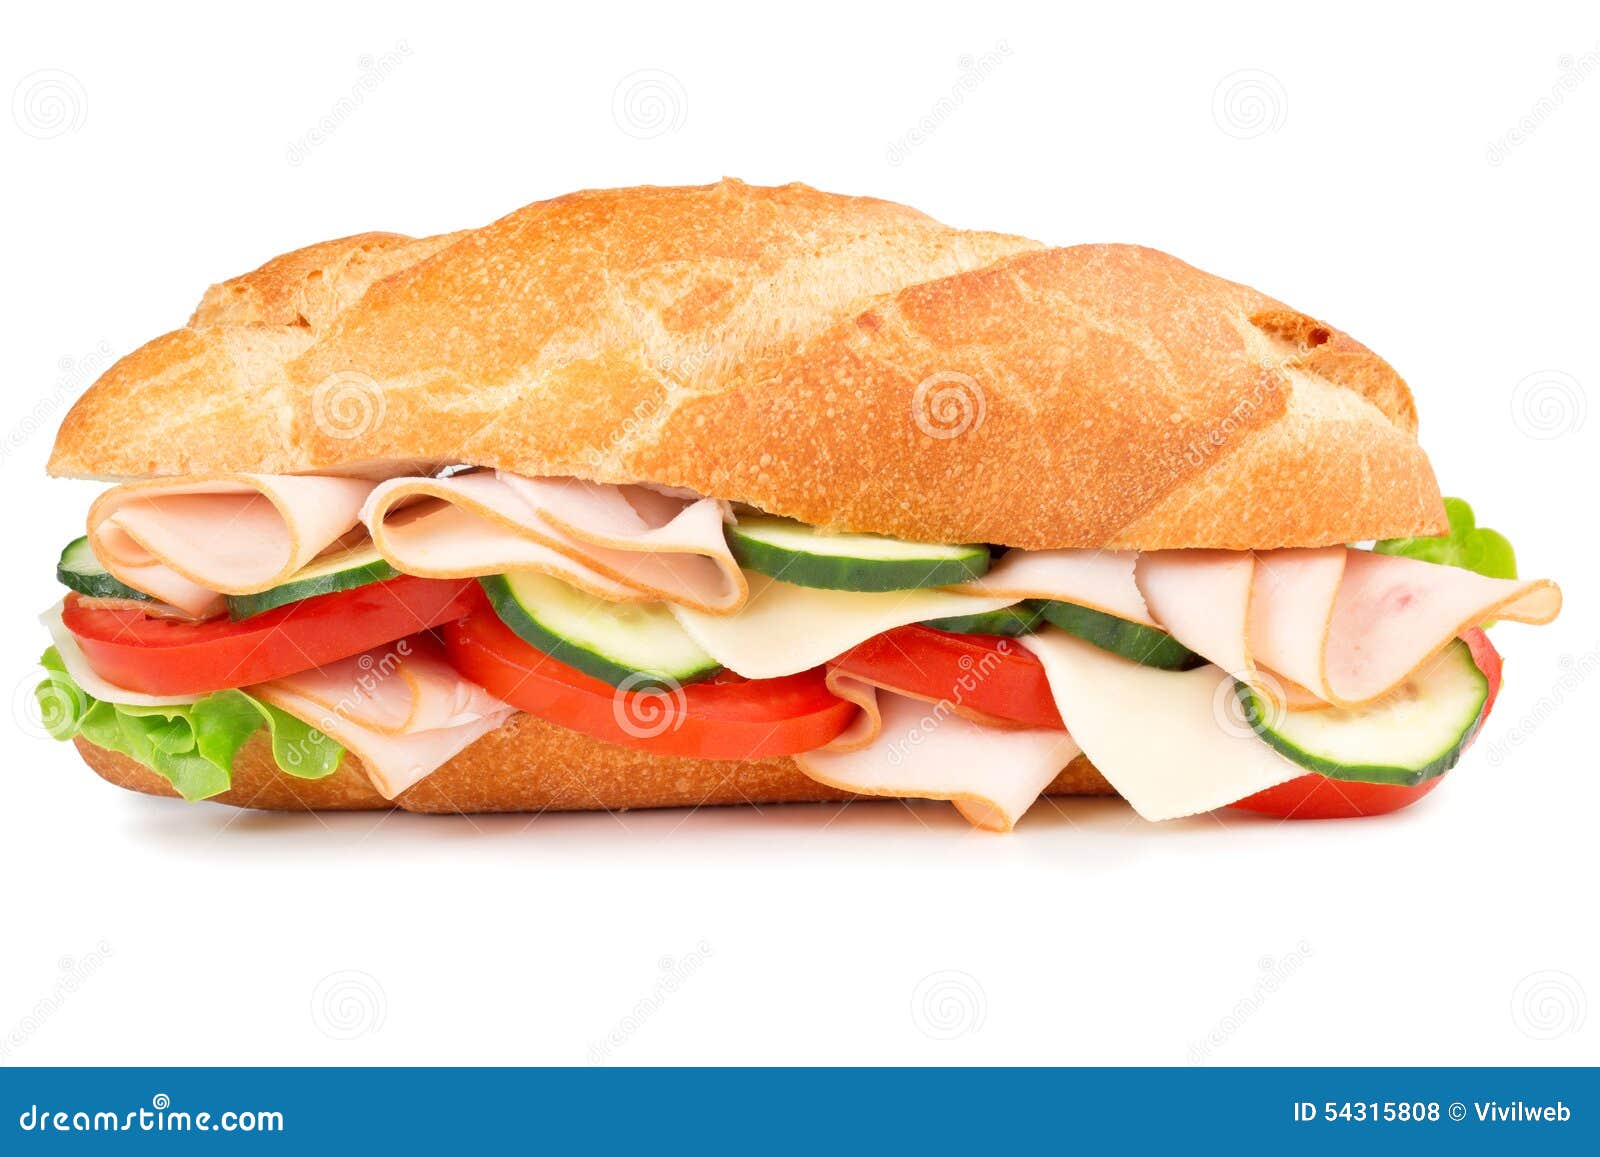 ham sandwich  on white